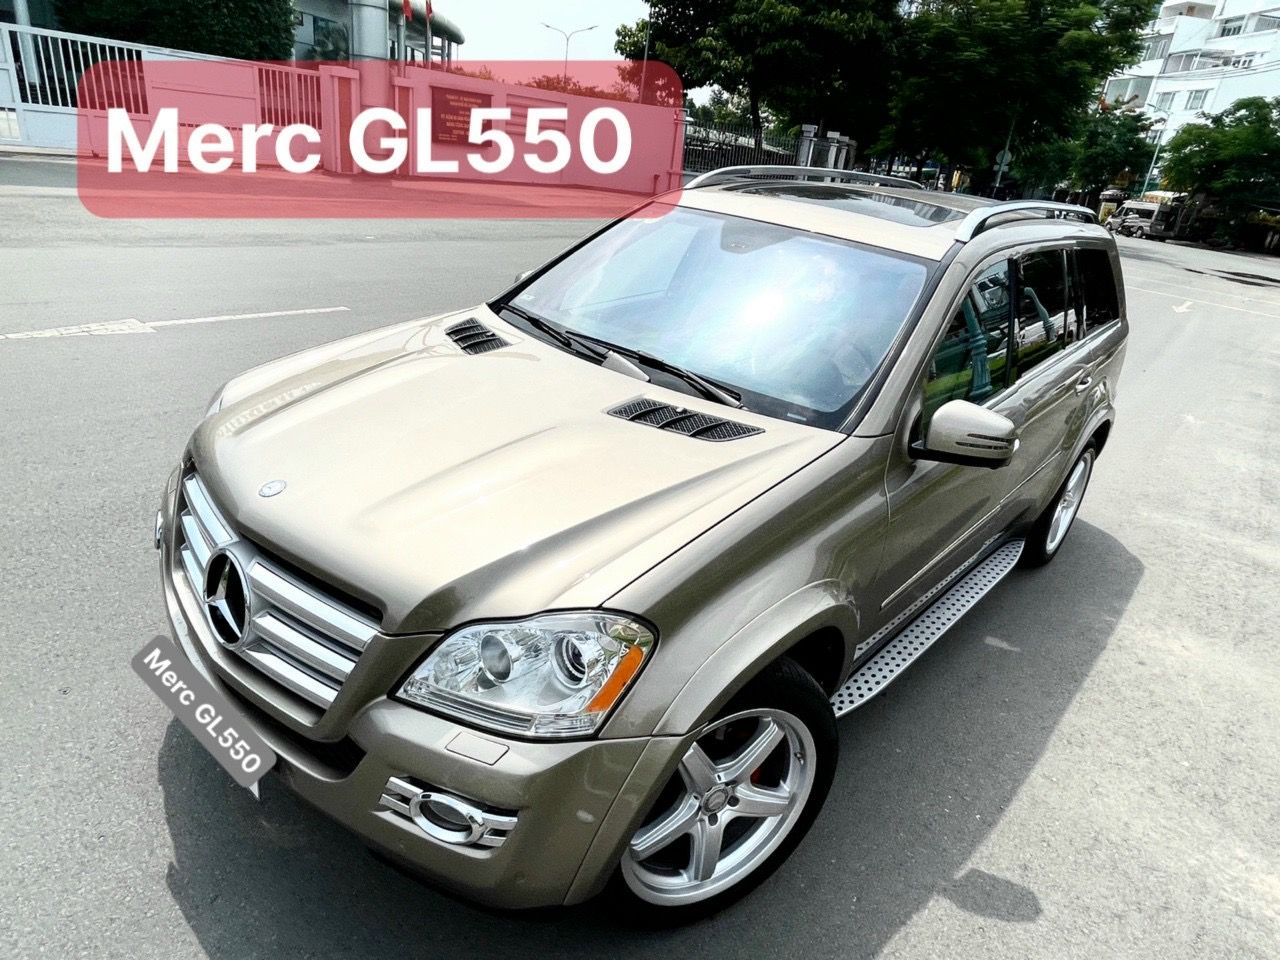 Bán xe ô tô Mercedes-Benz GL 550 2009 giá 755 triệu - 2156227